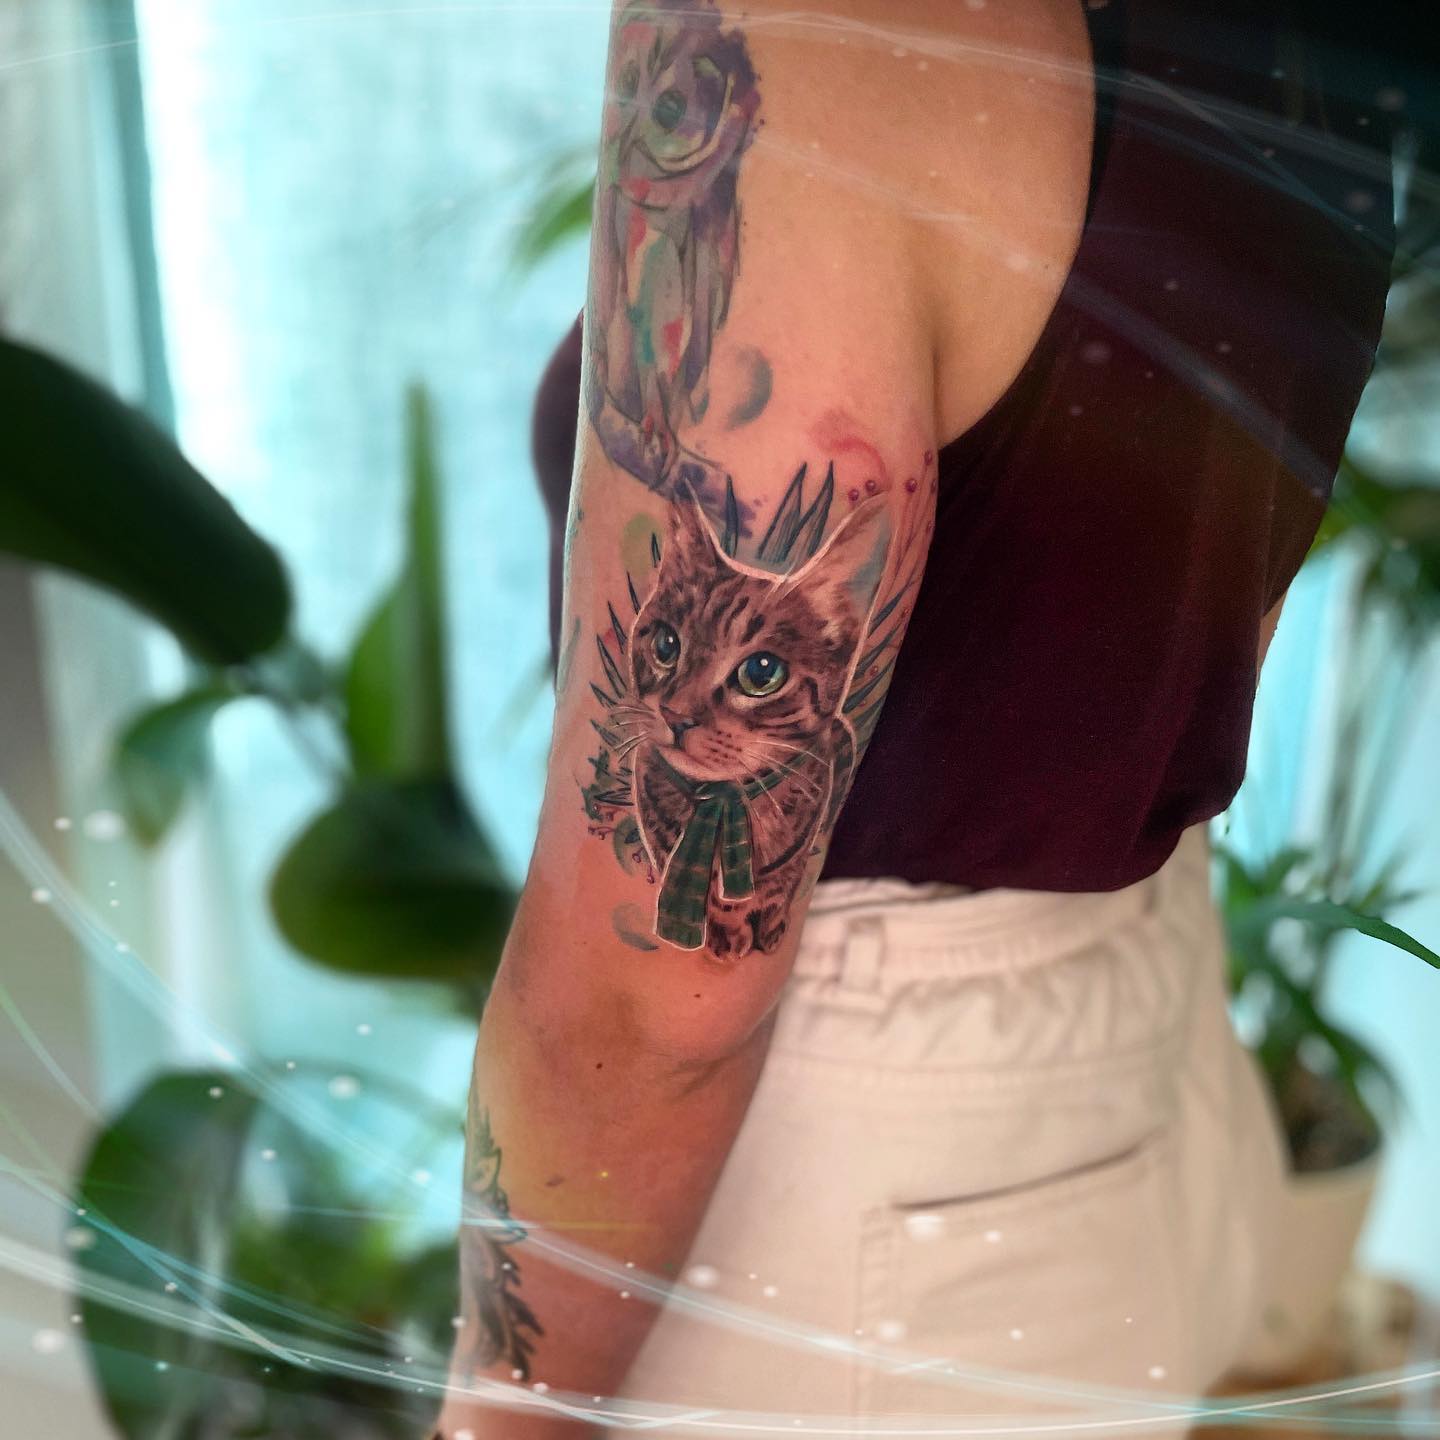 Tatuaje de gato funky